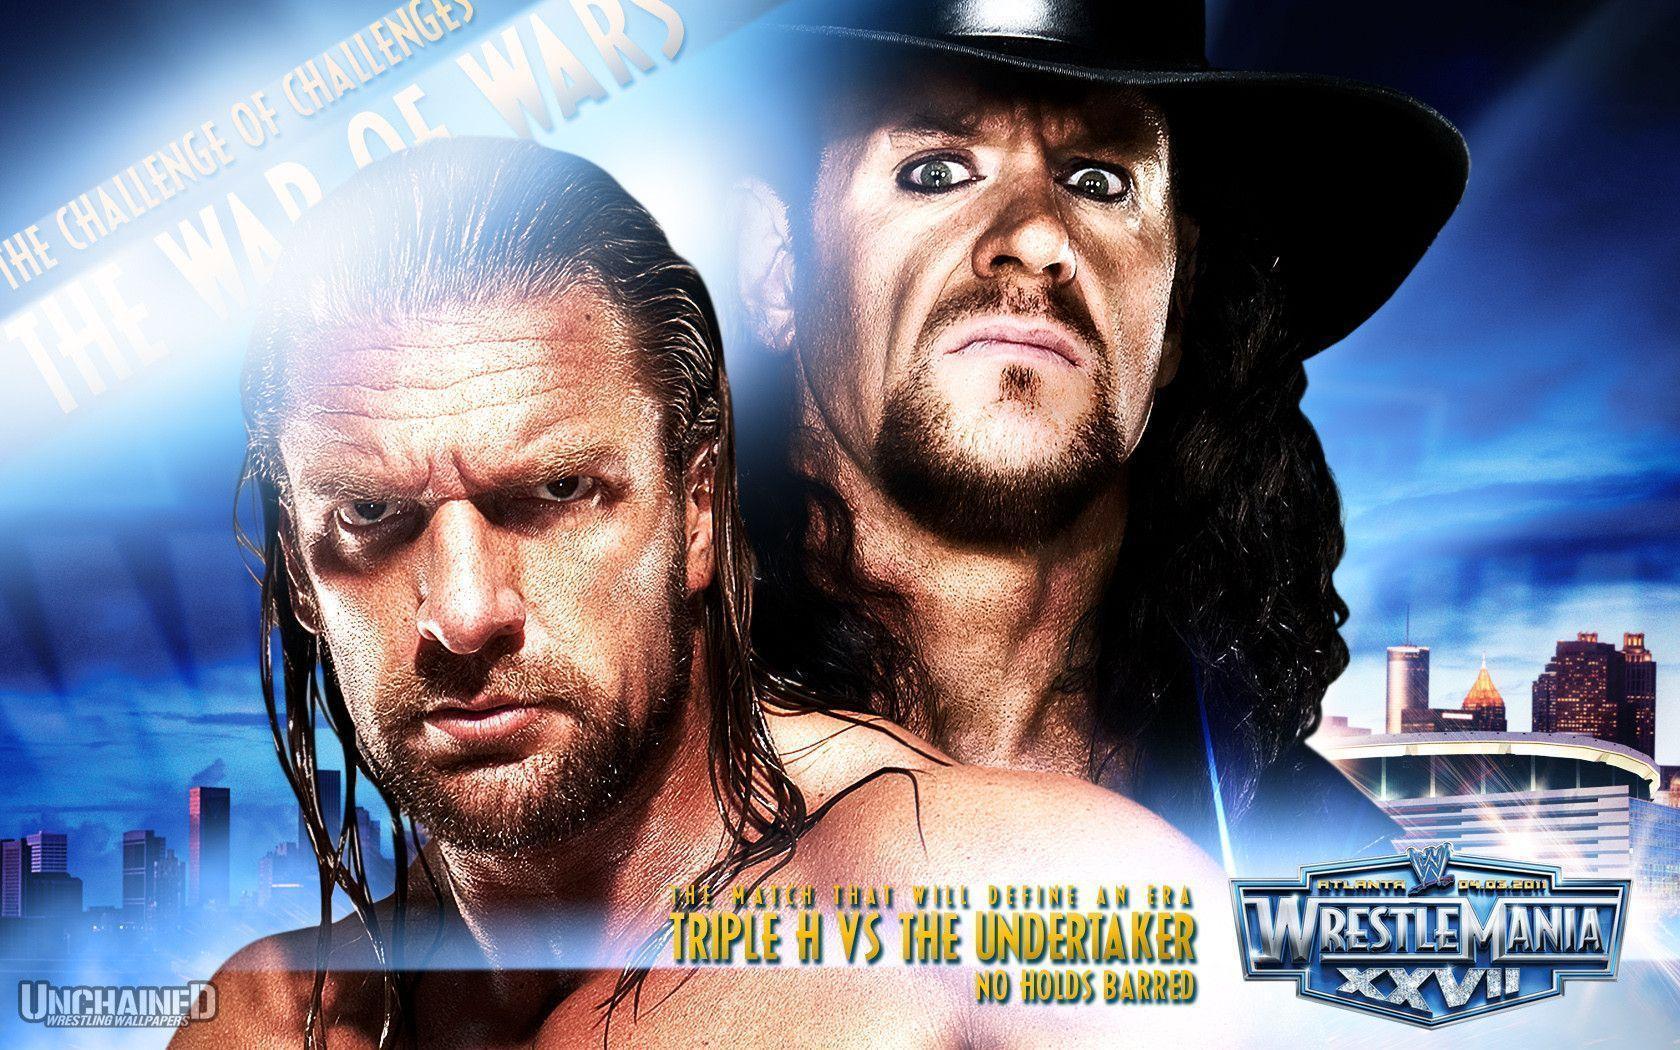 WWE WrestleMania 27 "Triple H vs Undertaker" Wallpaper Unchained